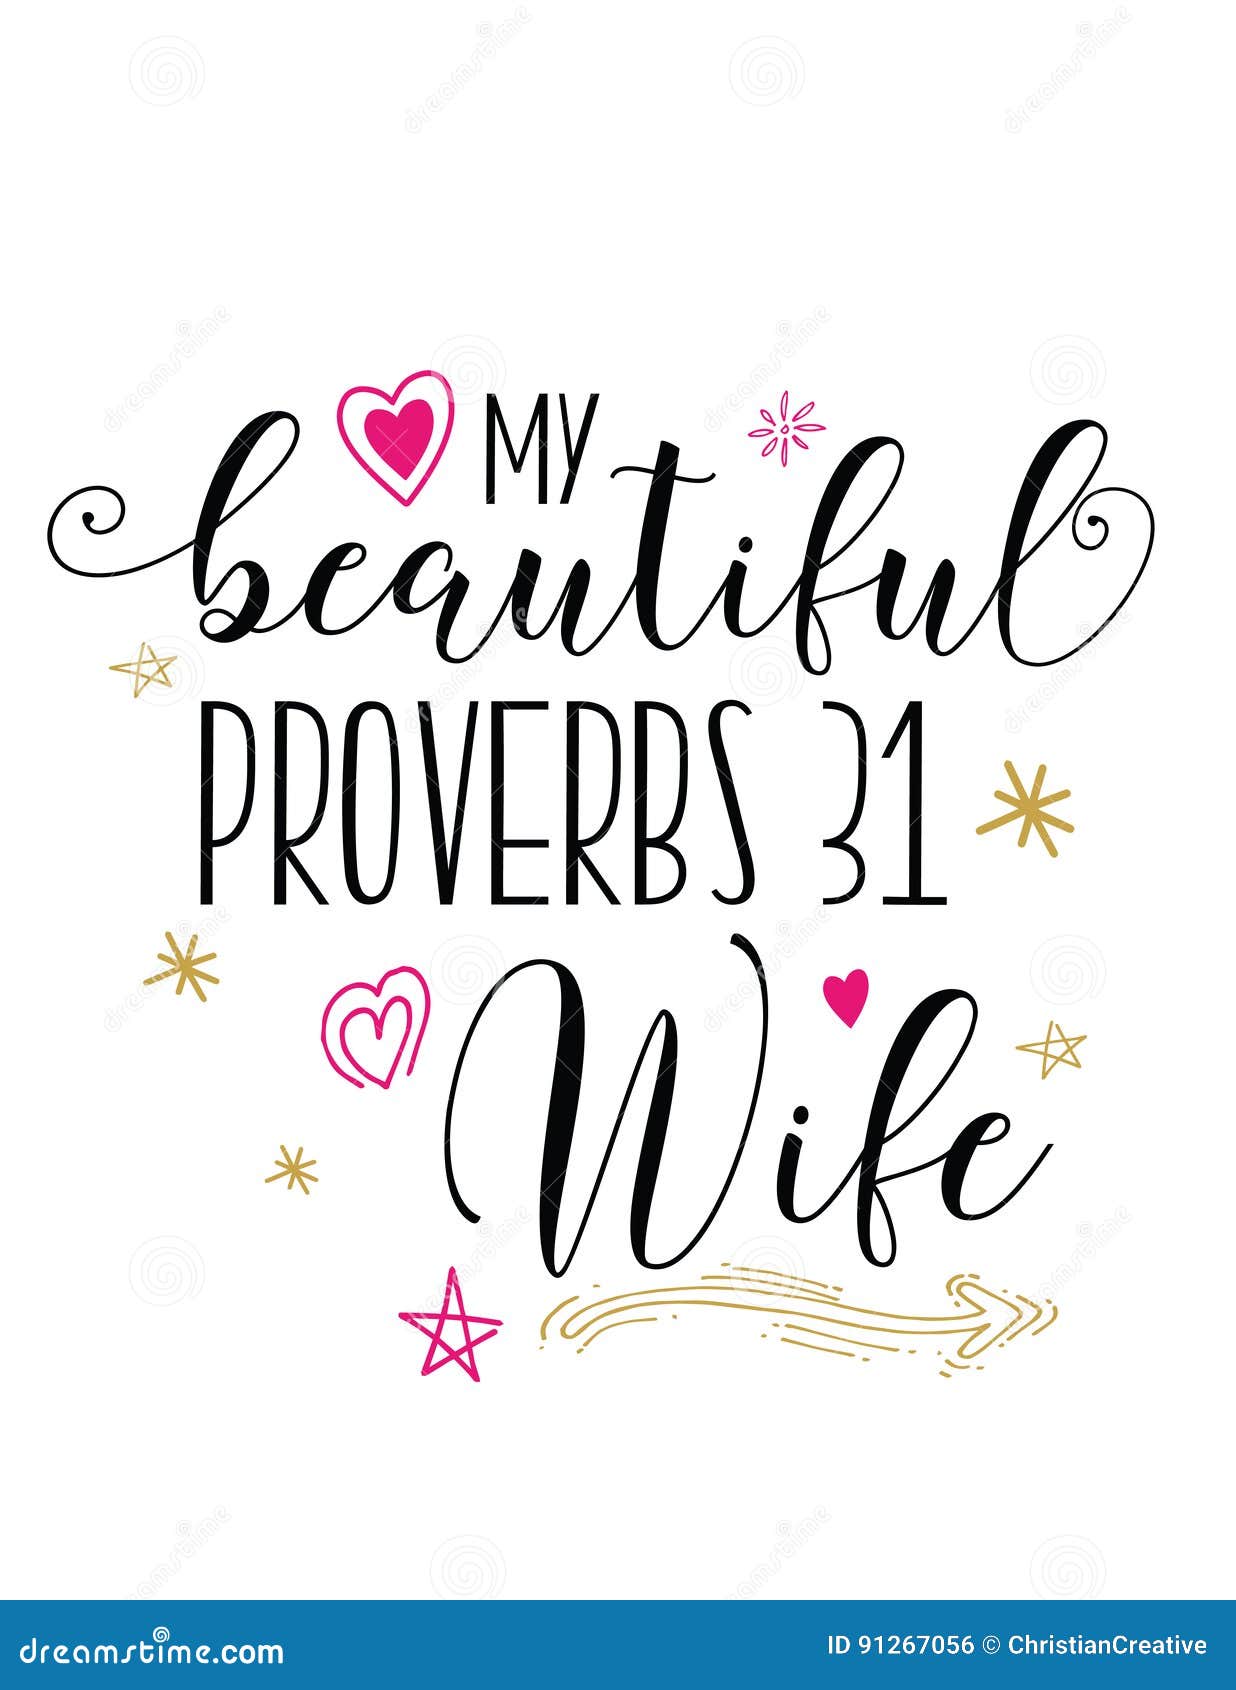 my beautiful proverbs 31 wife